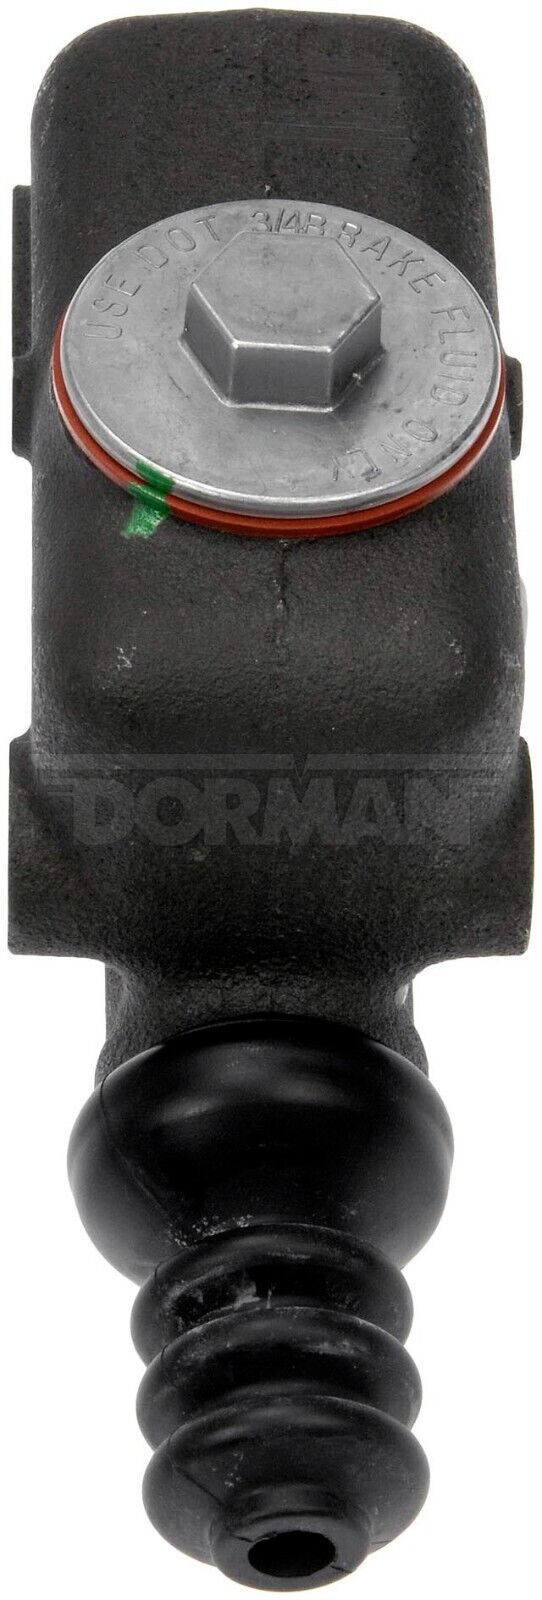 Dorman M3081 Brake Master Cylinder fits Hudson, Hyster and Packard models